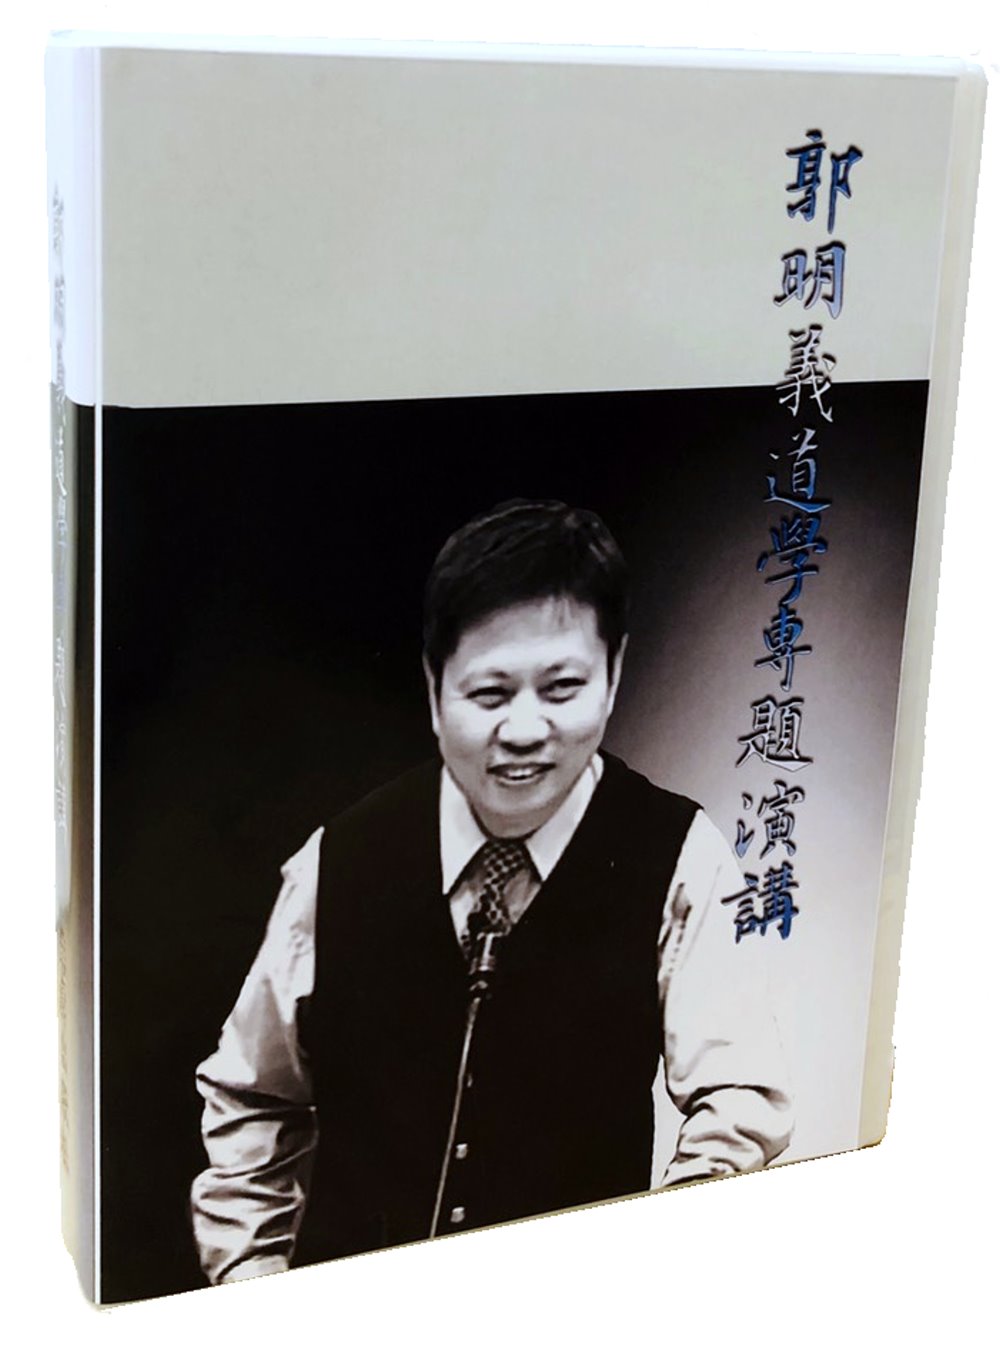 郭明義道學專題演講 (15張CD)